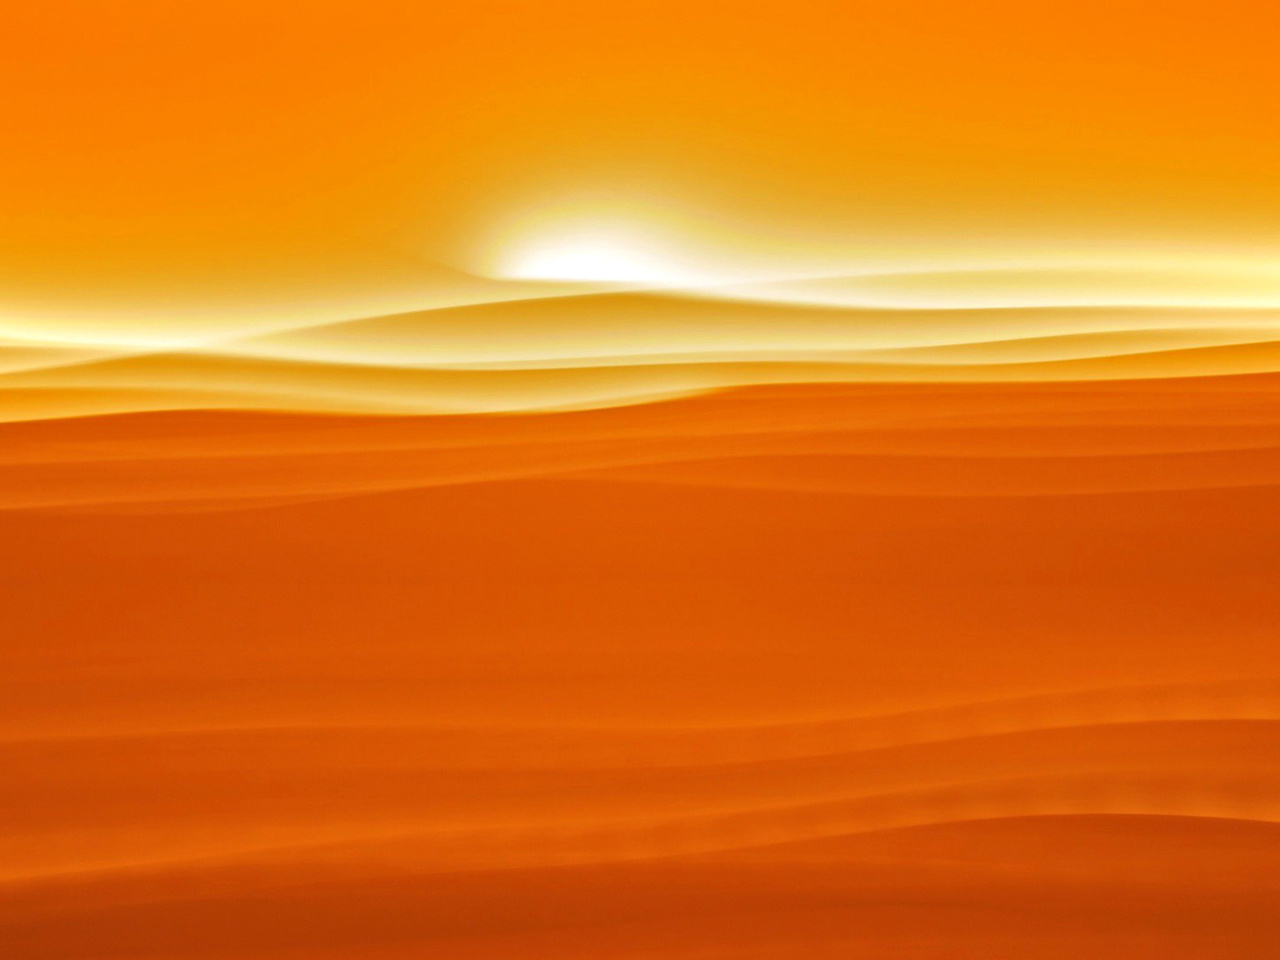 Обои Orange Sky and Desert 1280x960